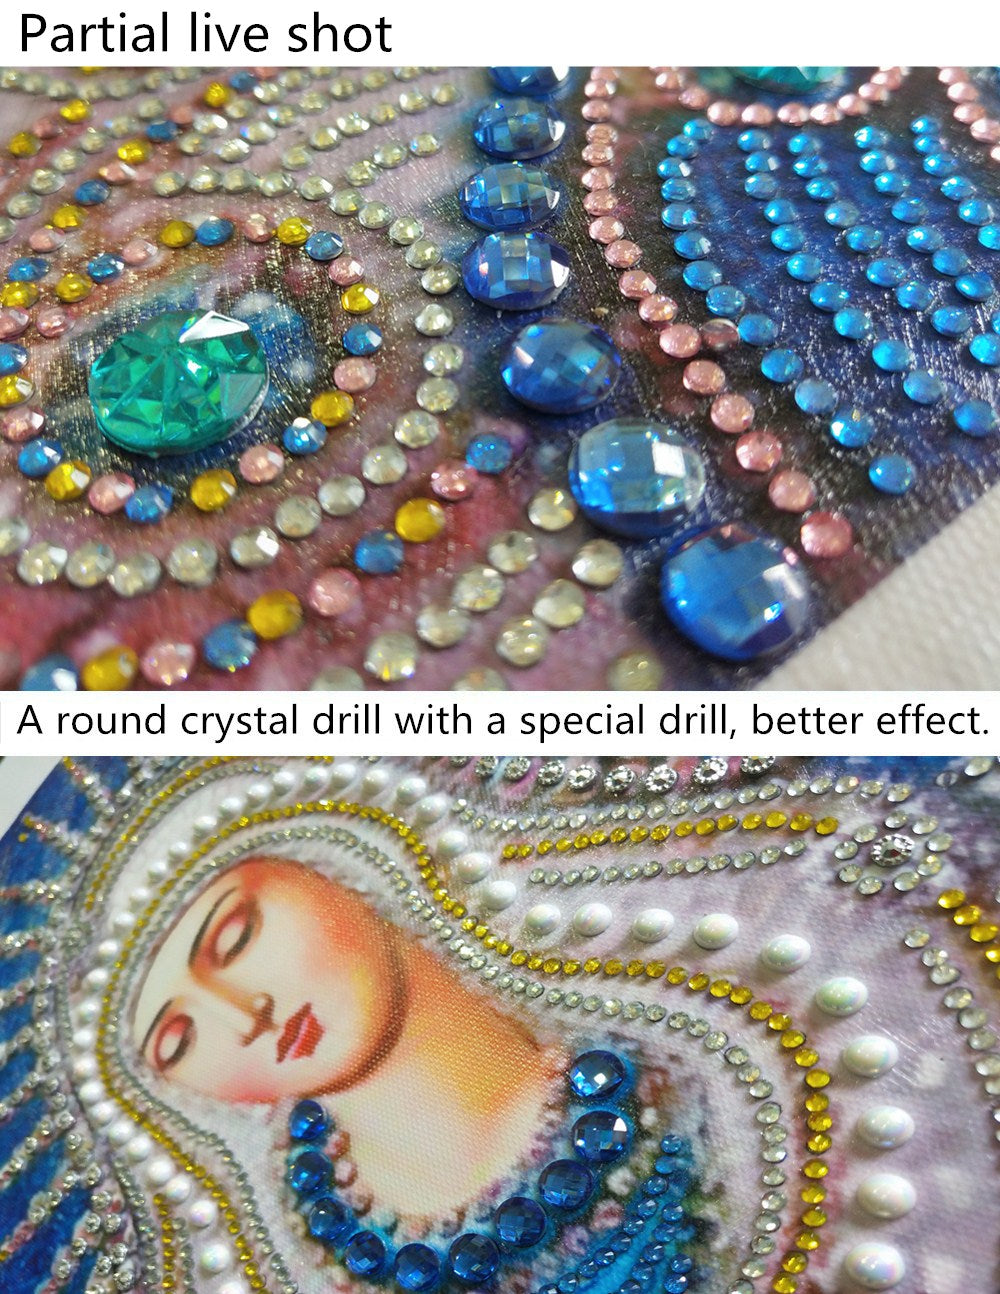 Mother Mary-DIY Diamond Painting